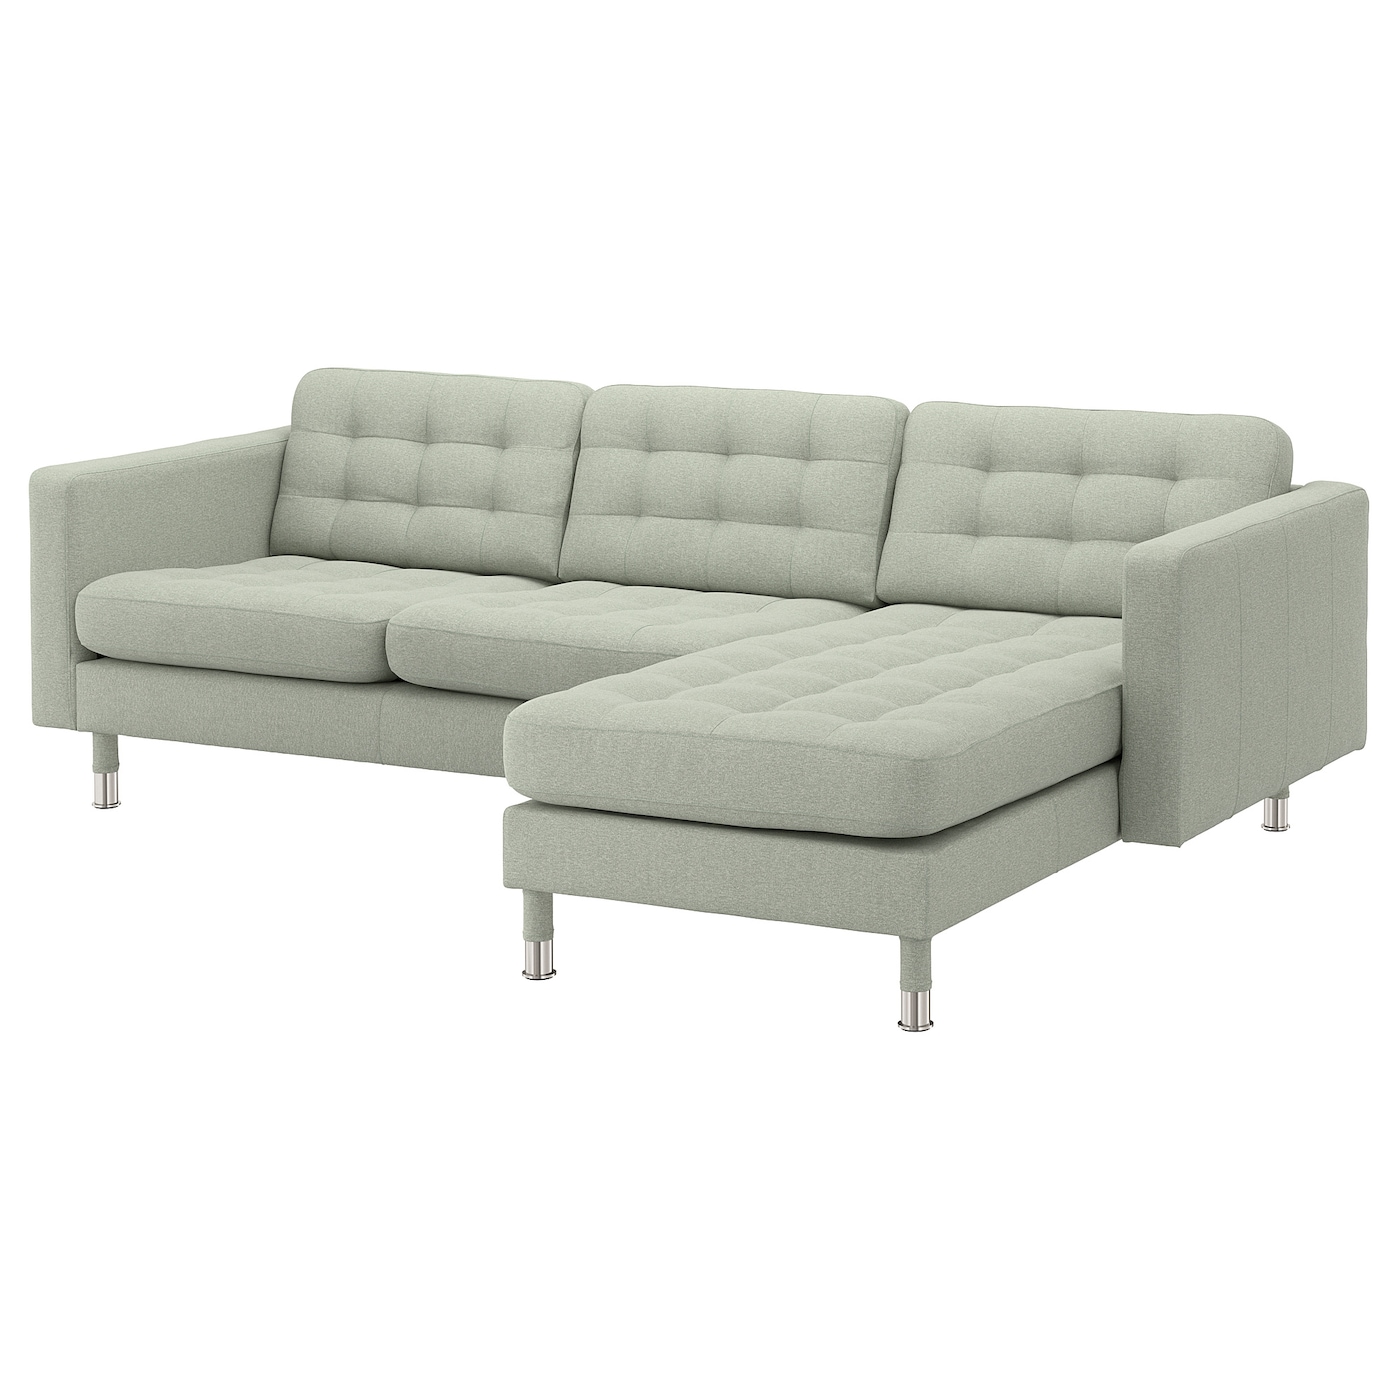 3-местный диван с шезлонгом - IKEA LANDSKRONA, 89x240см, светло-серый/серебристый, ЛАНДСКРУНА ИКЕА